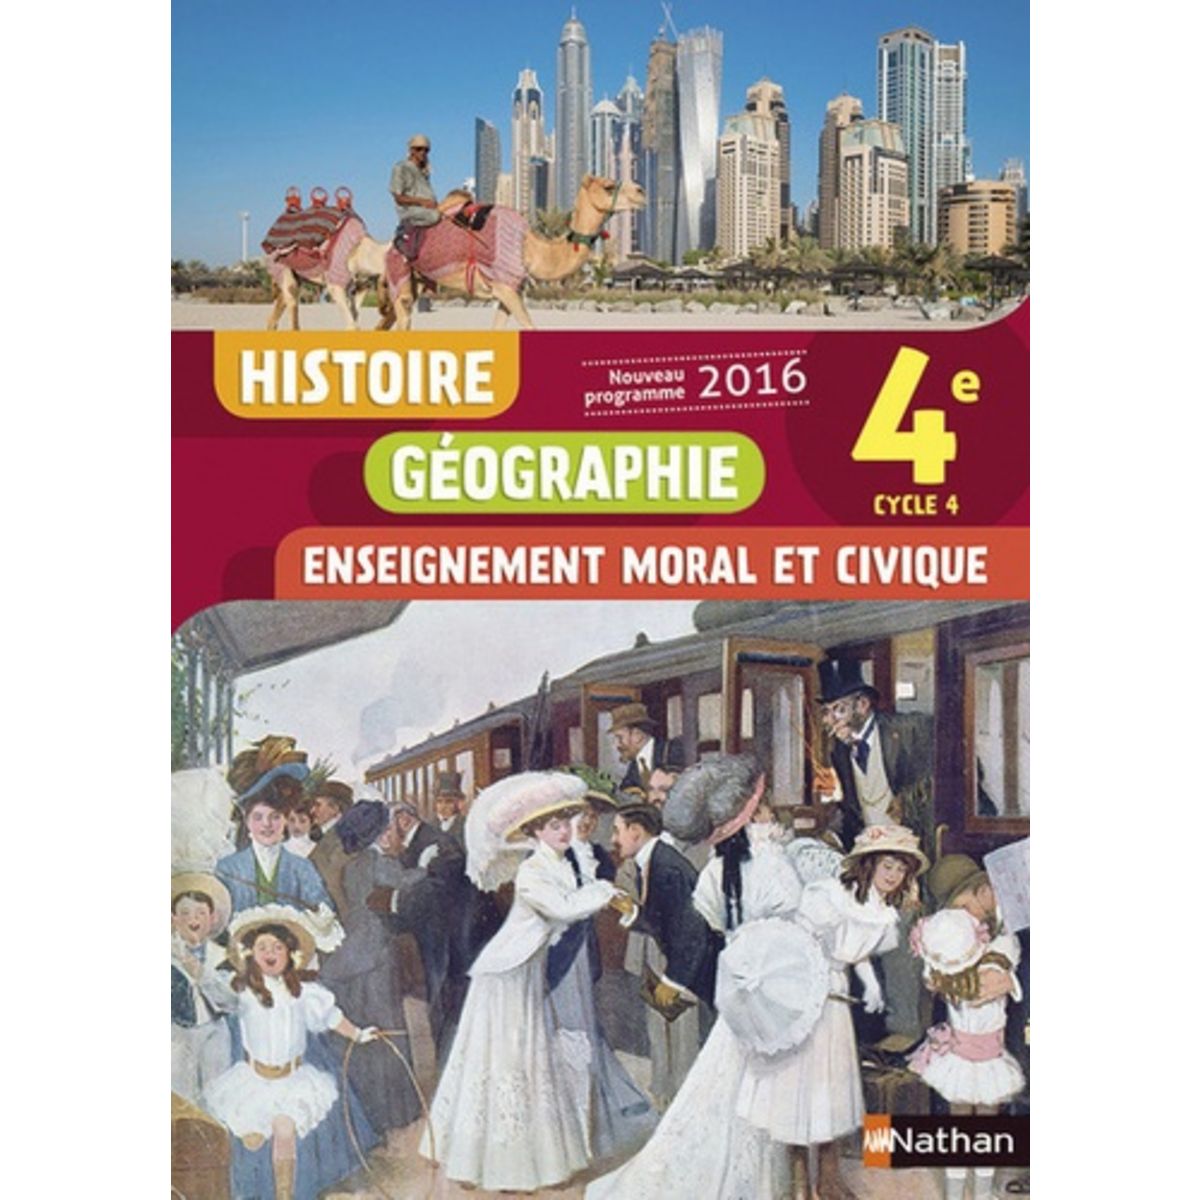 Histoire Geographie Enseignement Moral Et Civique 4e Cycle 4 Edition 2016 Cote Sébastien Pas 1109